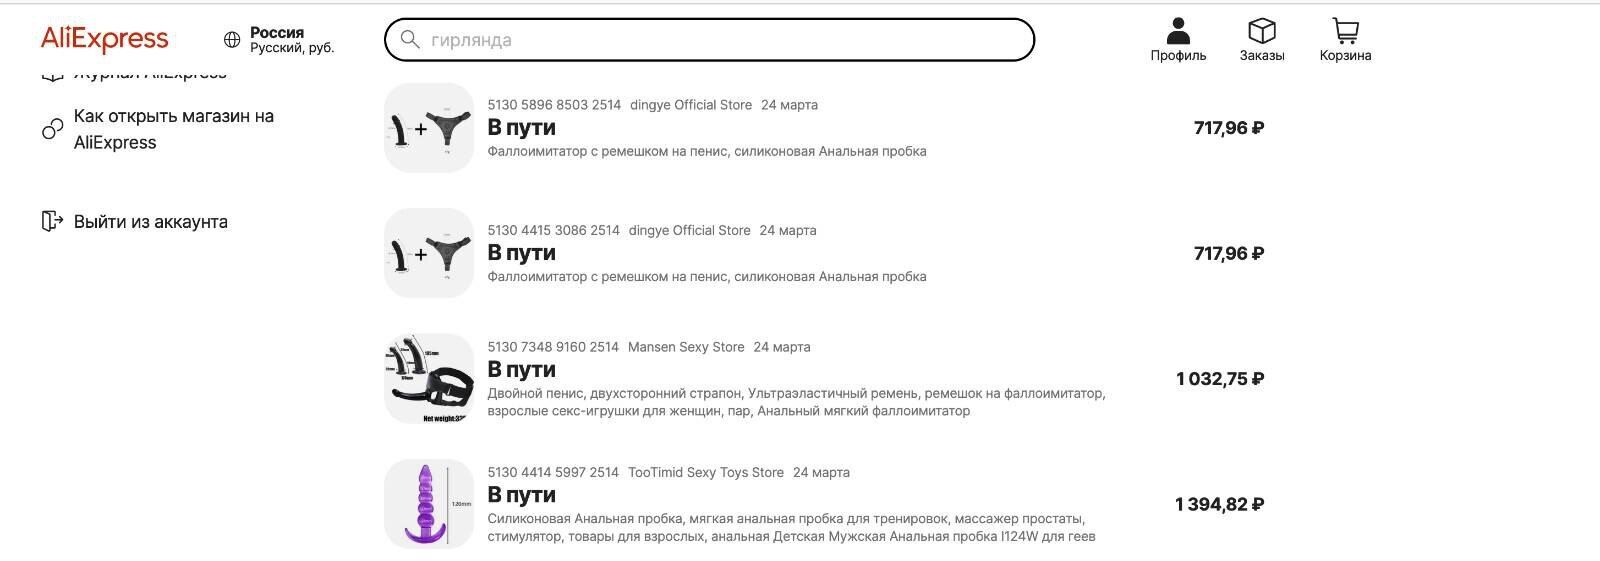 Украинские хакеры сломали аккаунт друга Татарского и вместо дронов купили на $25 тыс. секс-игрушек на AliExpress. Фото